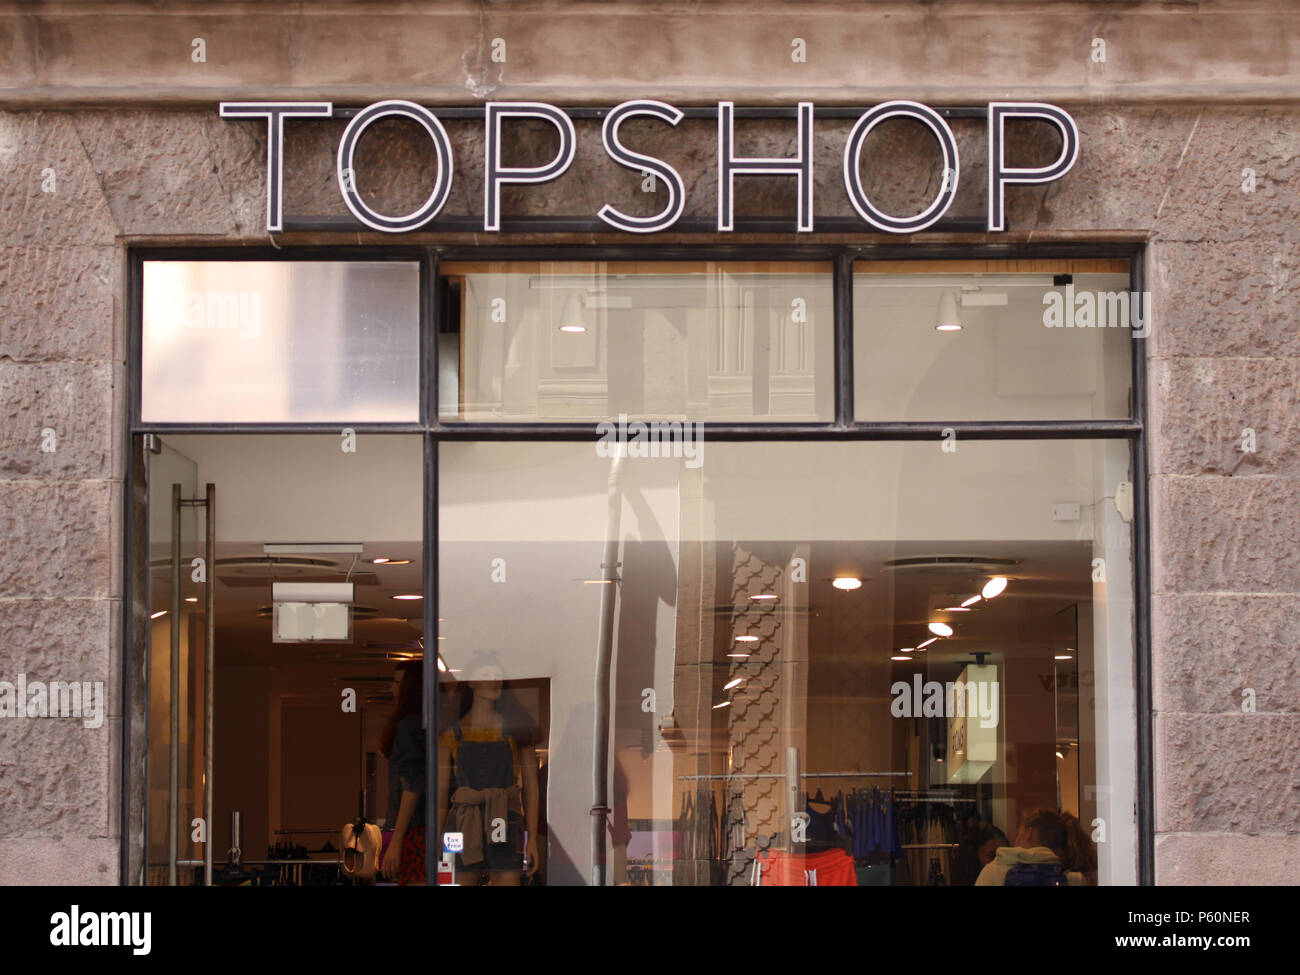 Kopenhagen, Dänemark - 26. Juni 2018: Topshop Logo auf Panel zu speichern.  Topshop ist eine britische Modeunternehmen mit mehr als 500 Shops weltweit  Stockfotografie - Alamy